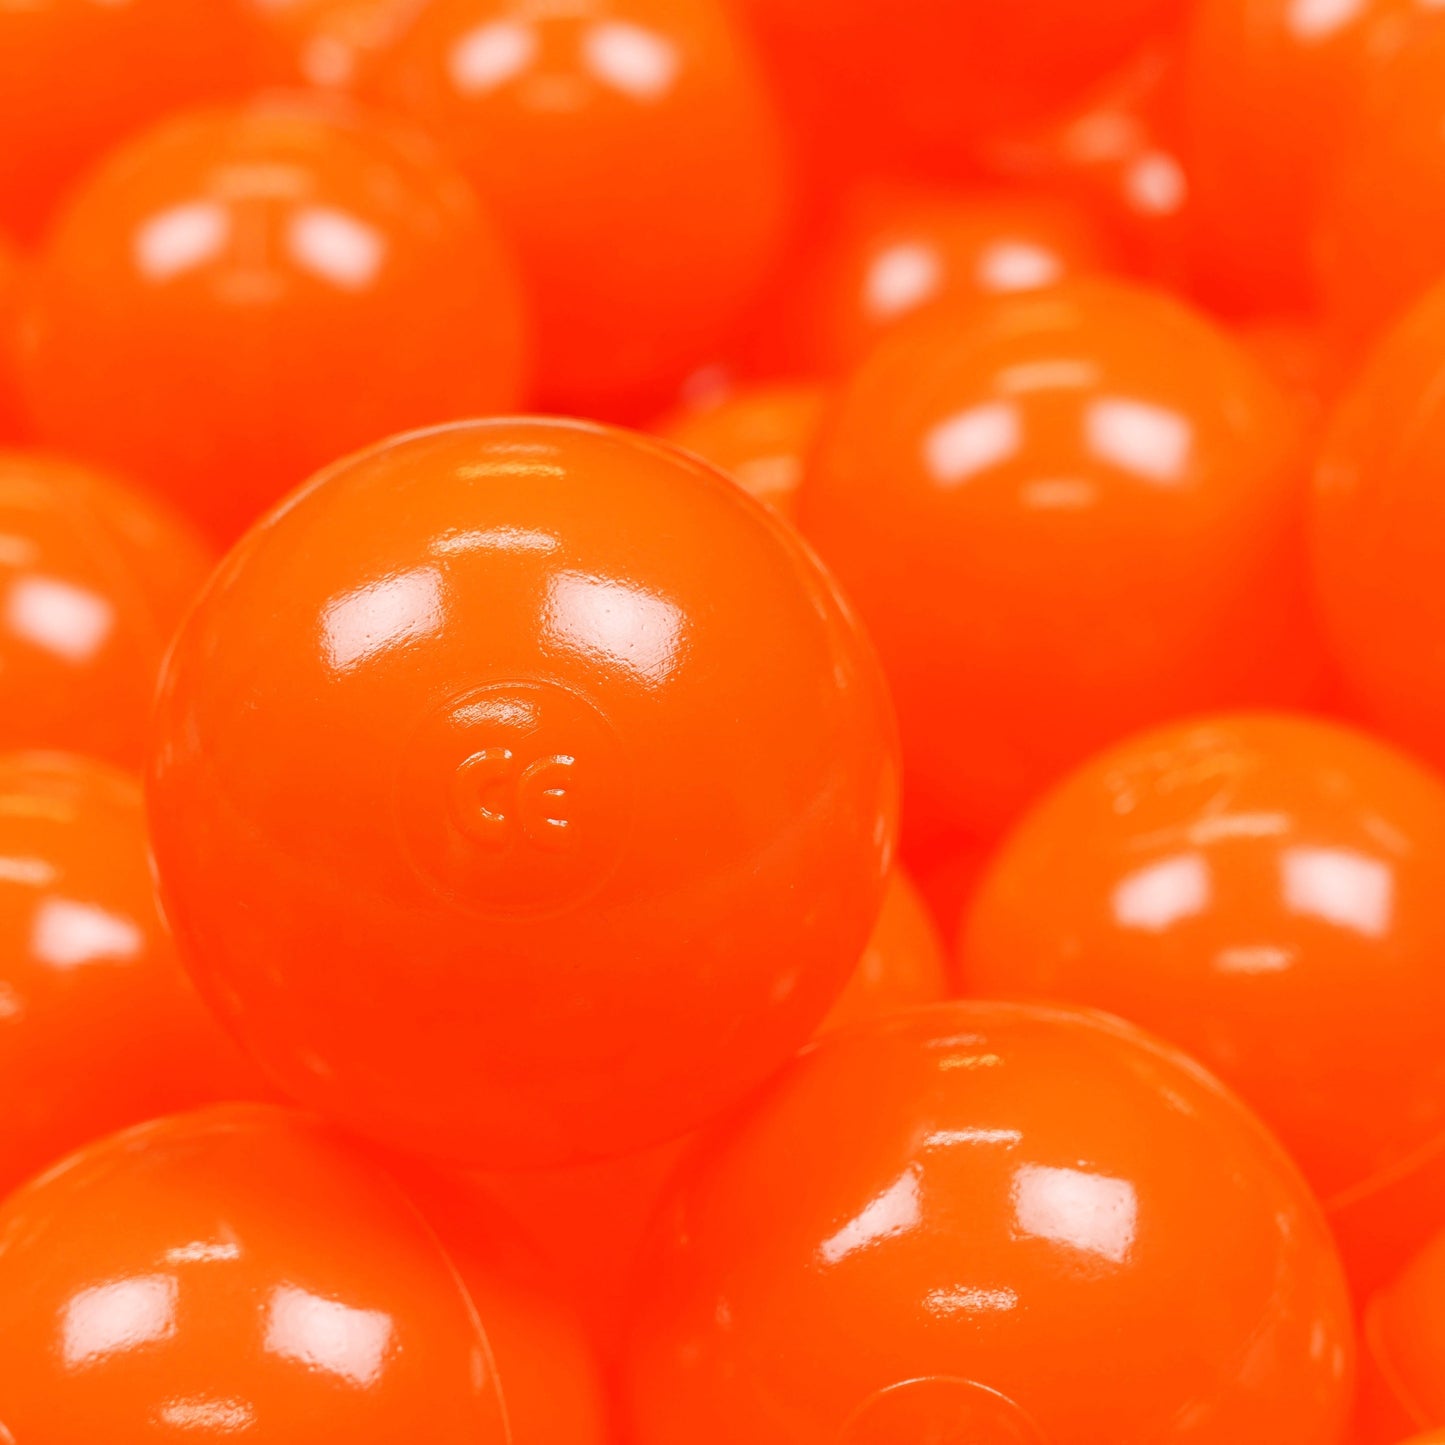 Balles de jeu ø7cm 500 pièces orange